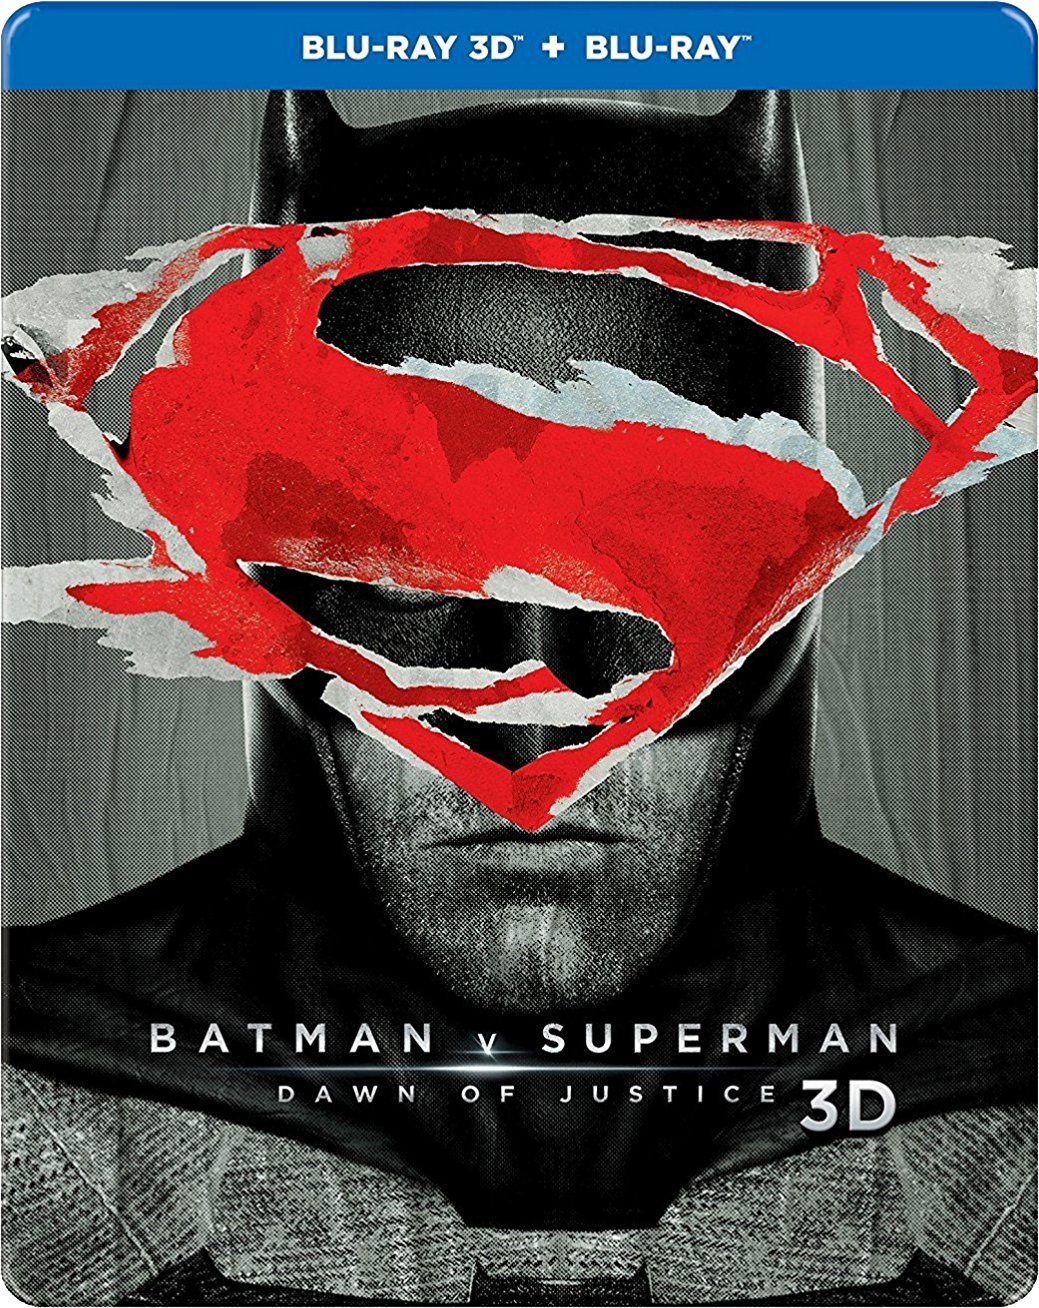 batman-vs-superman-dawn-of-justice-steelbook-blu-ray-3d-blu-ray-2-disc